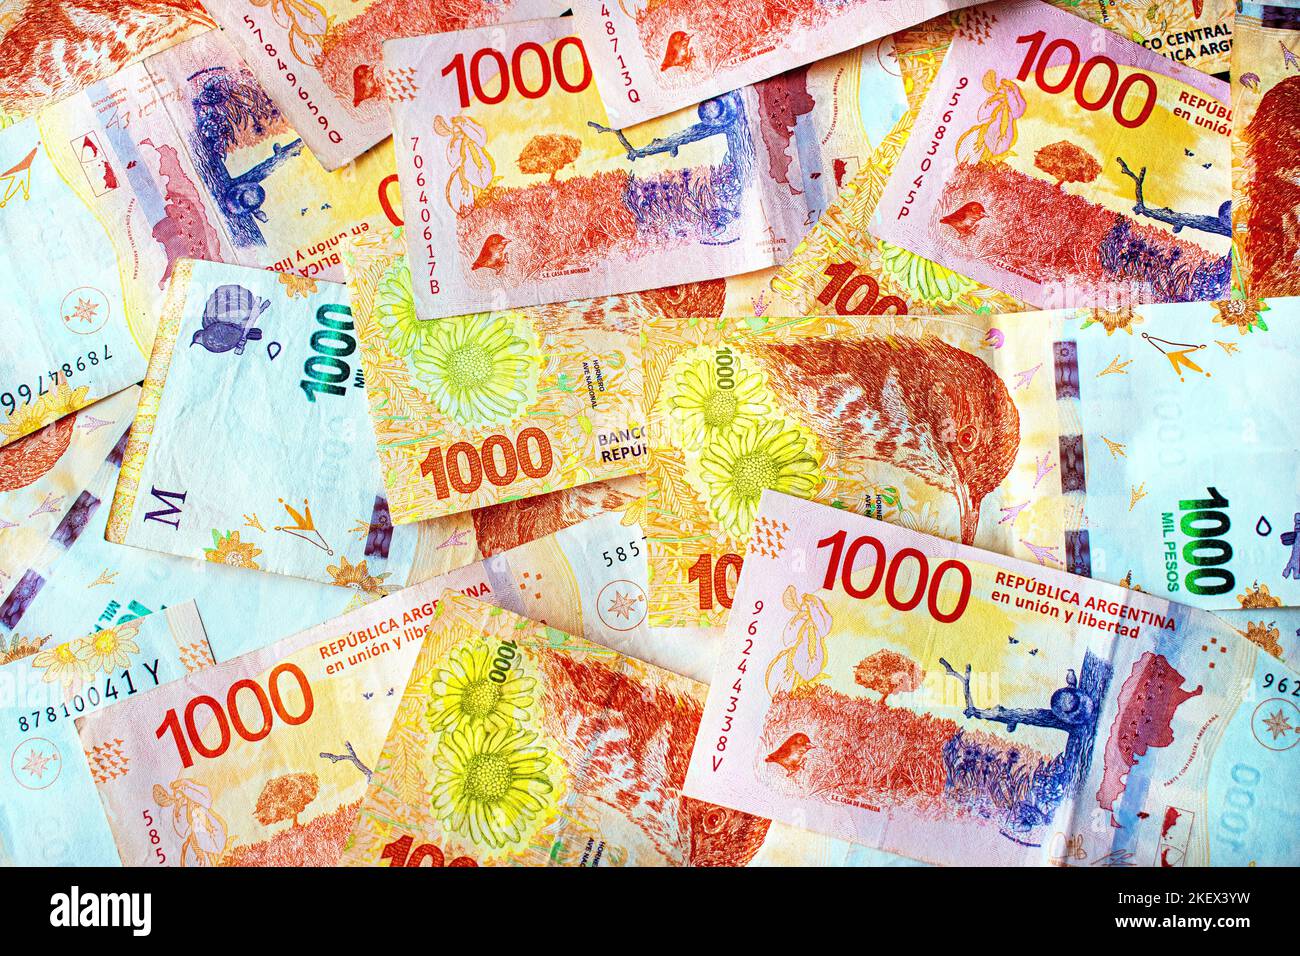 Denaro argentino. Banconote di 1000 pesos argentini in contanti (economia, affari, finanza, inflazione, crisi). Foto Stock